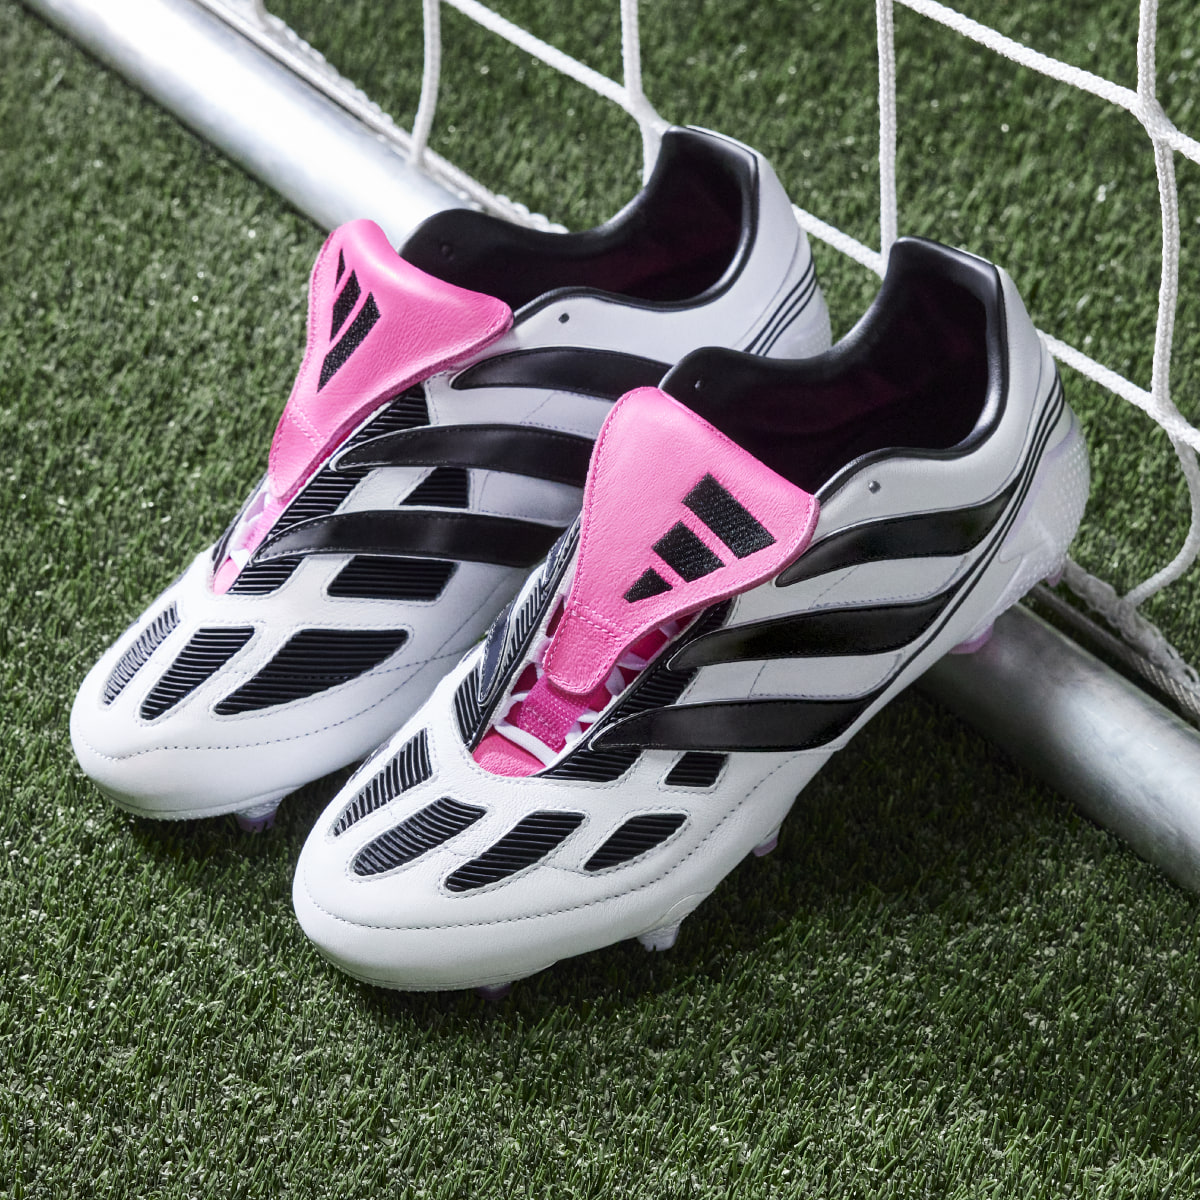 Adidas Predator Precision+ Firm Ground Boots. 4